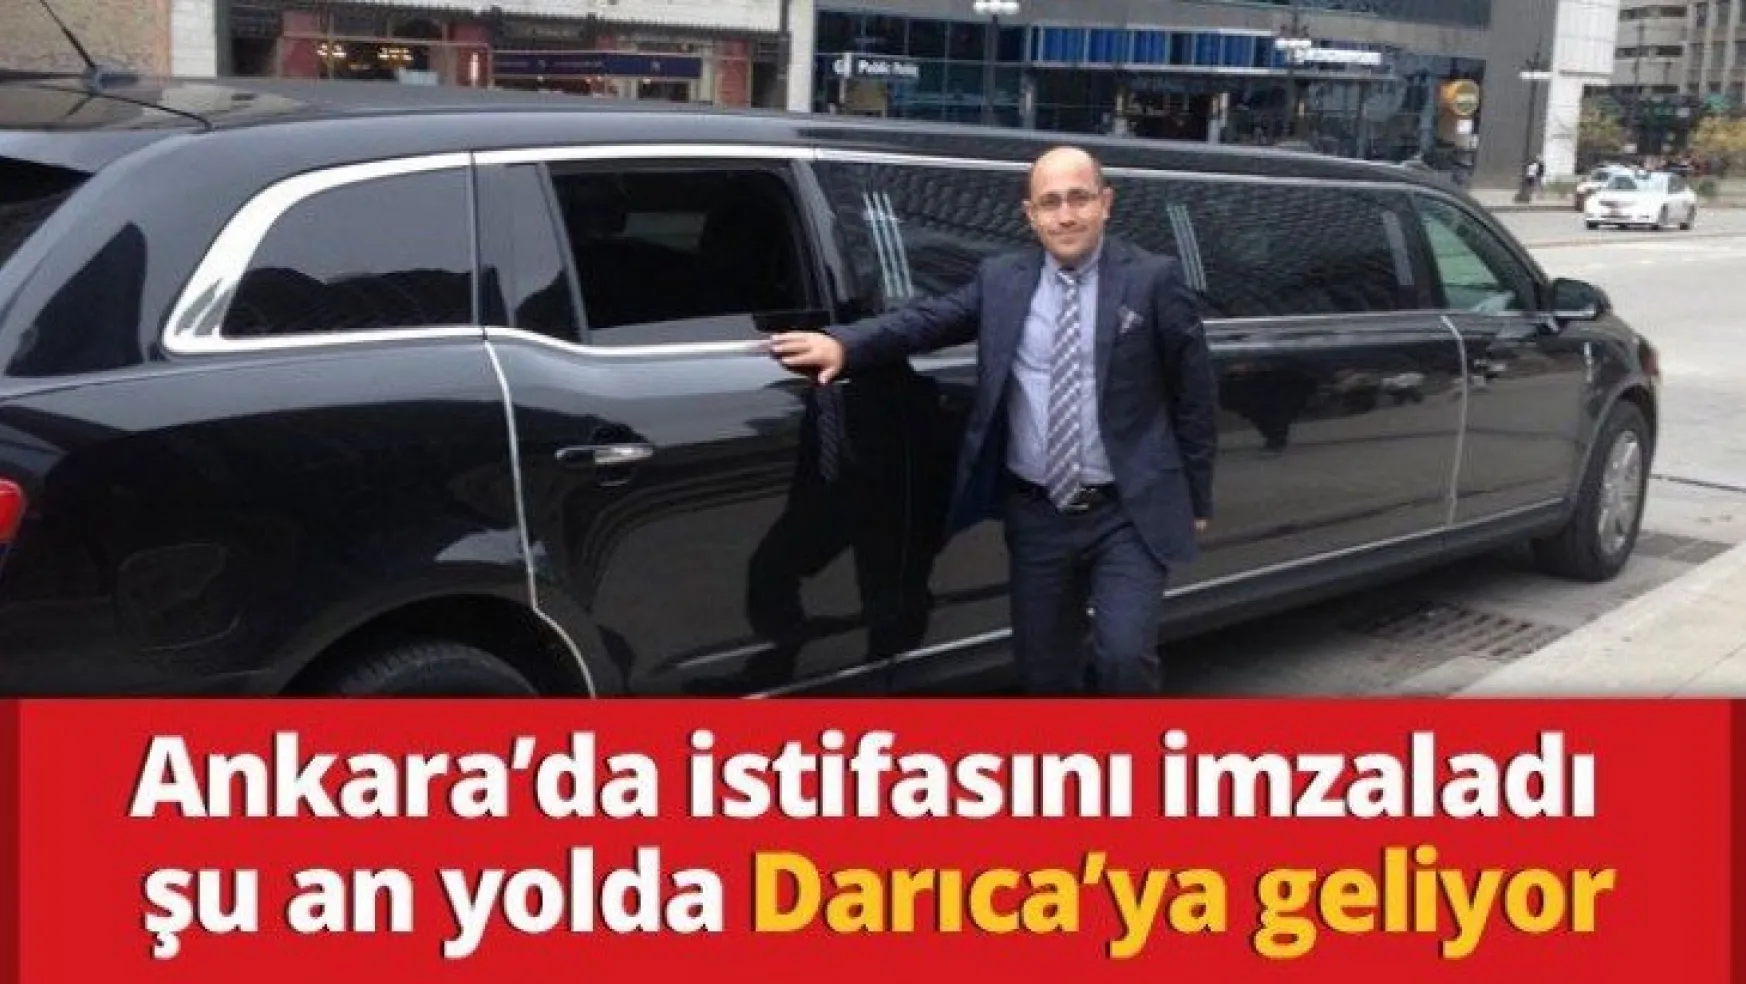 Ankara'da istifasını imzaladı şu an yolda Darıca'ya geliyor